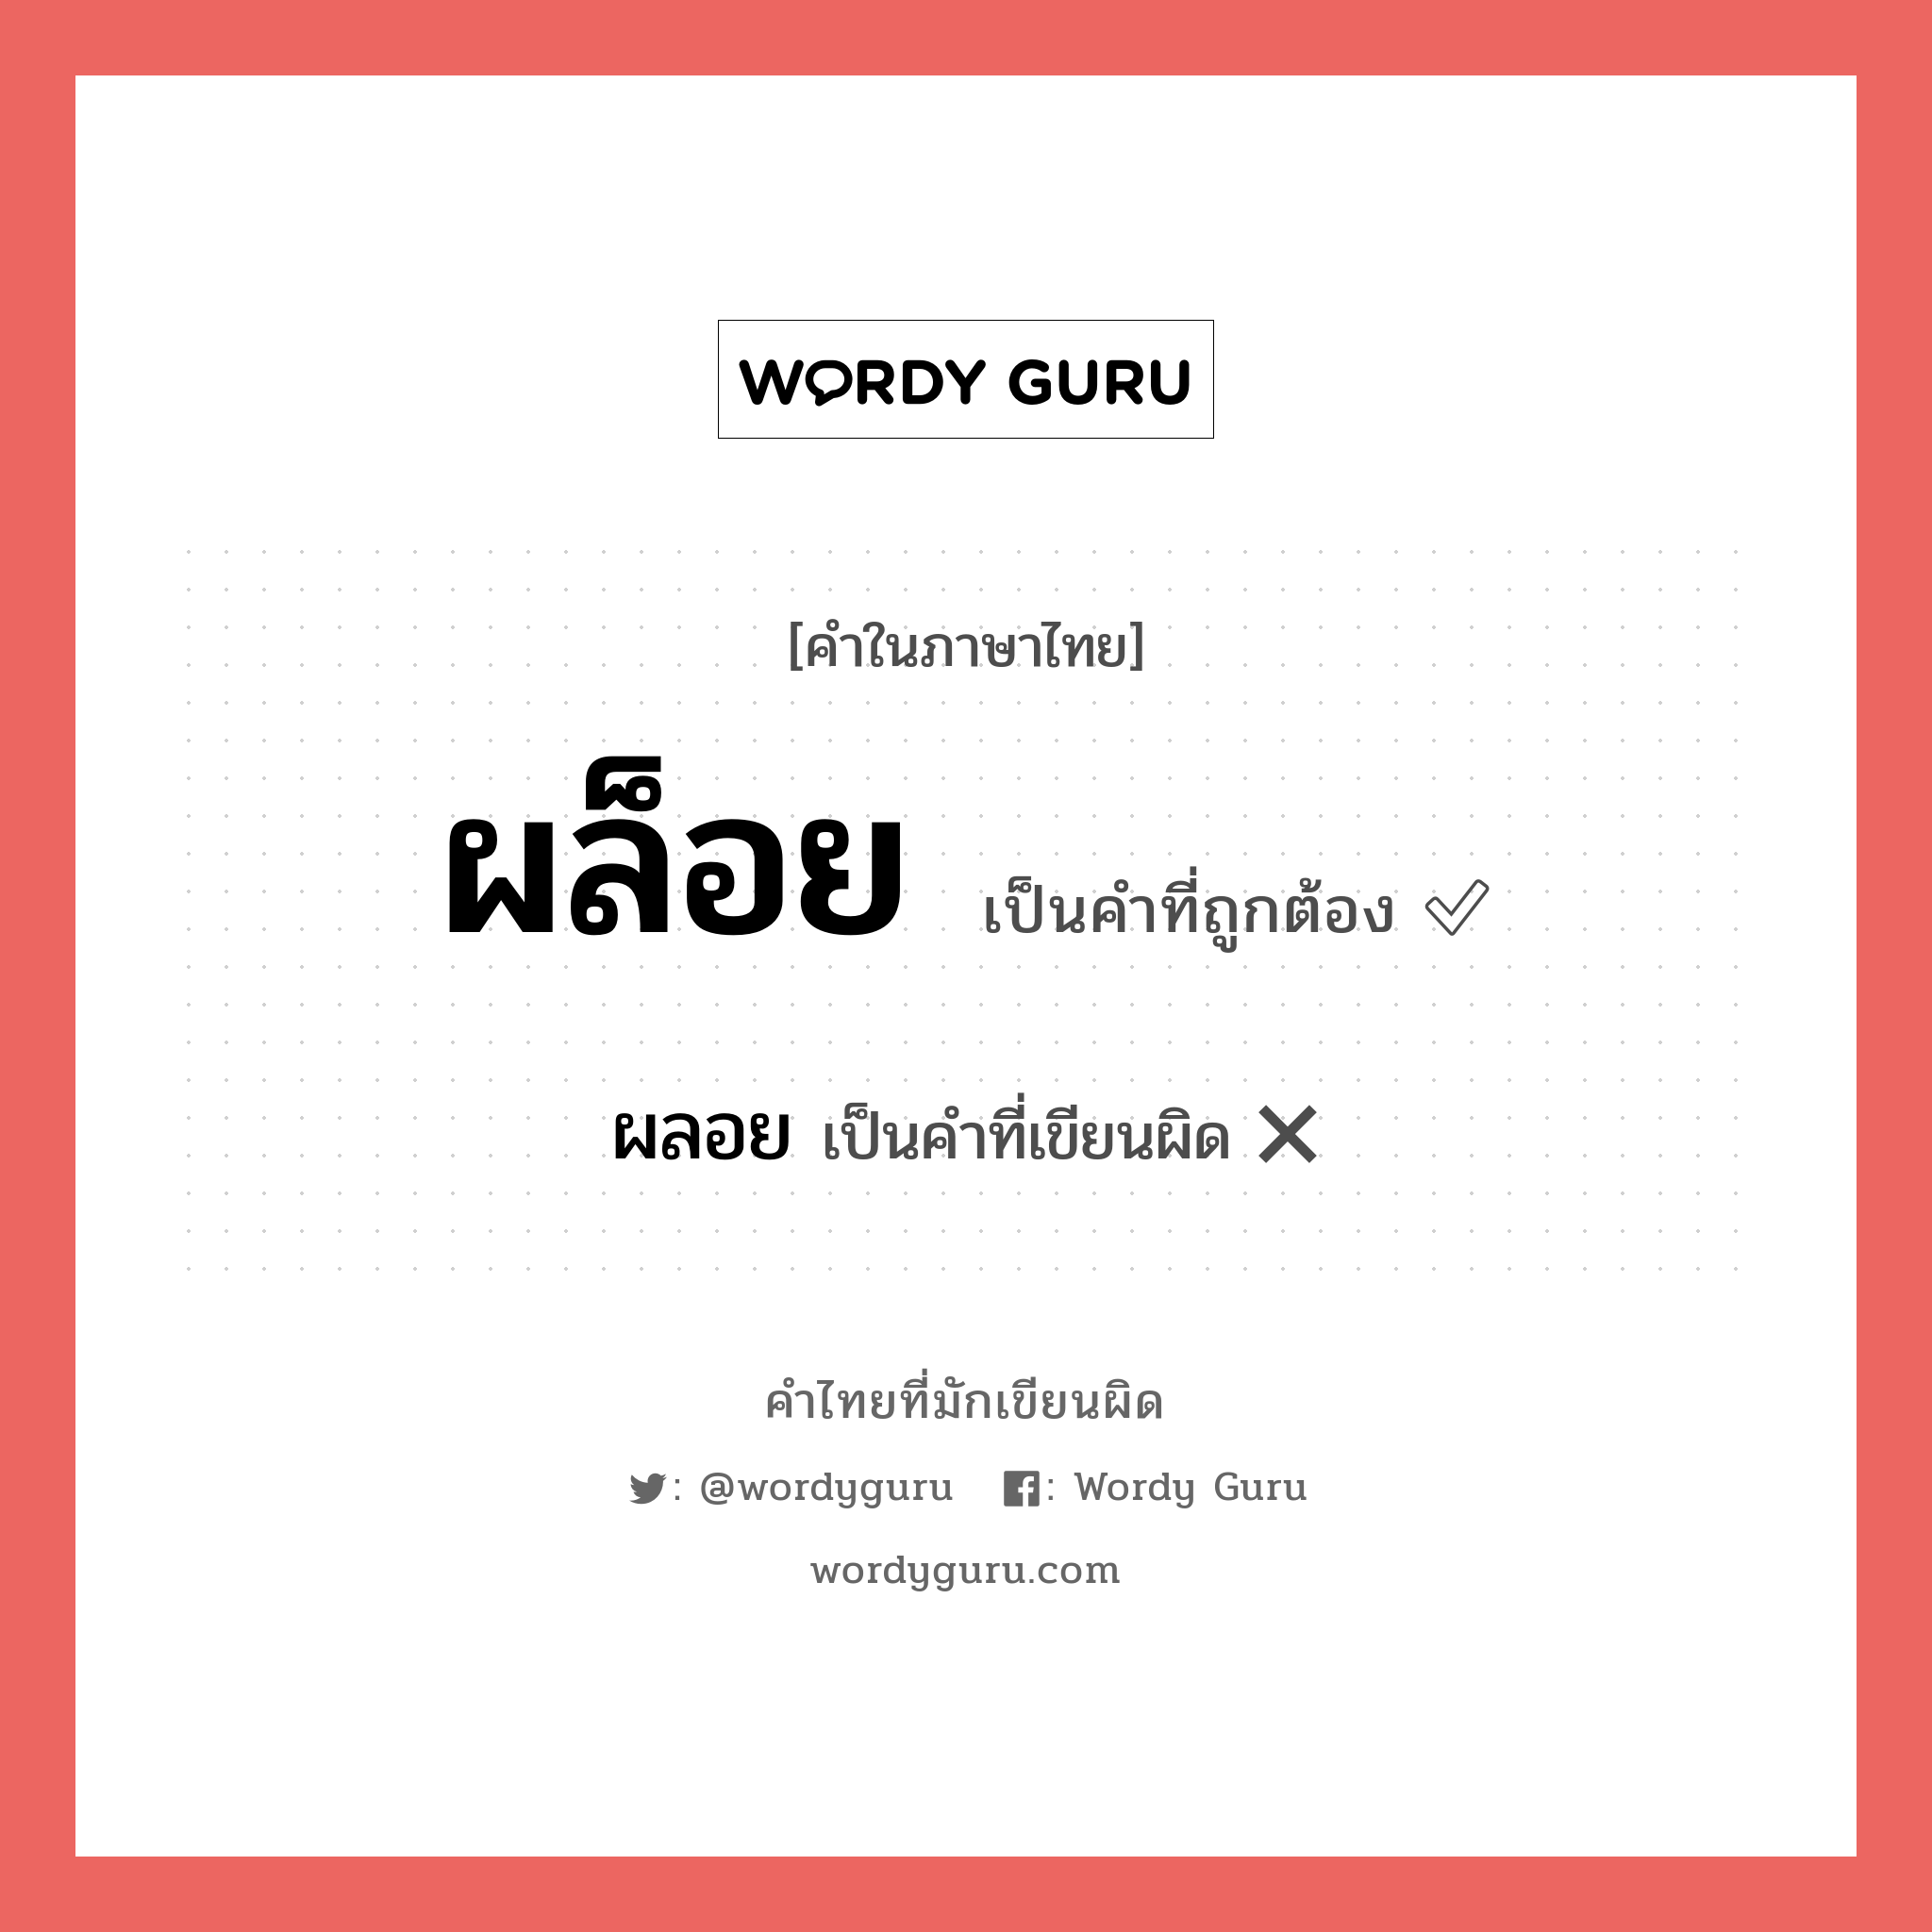 ผล็อย หรือ ผลอย คำไหนเขียนถูก?, คำในภาษาไทยที่มักเขียนผิด ผล็อย คำที่ผิด ❌ ผลอย